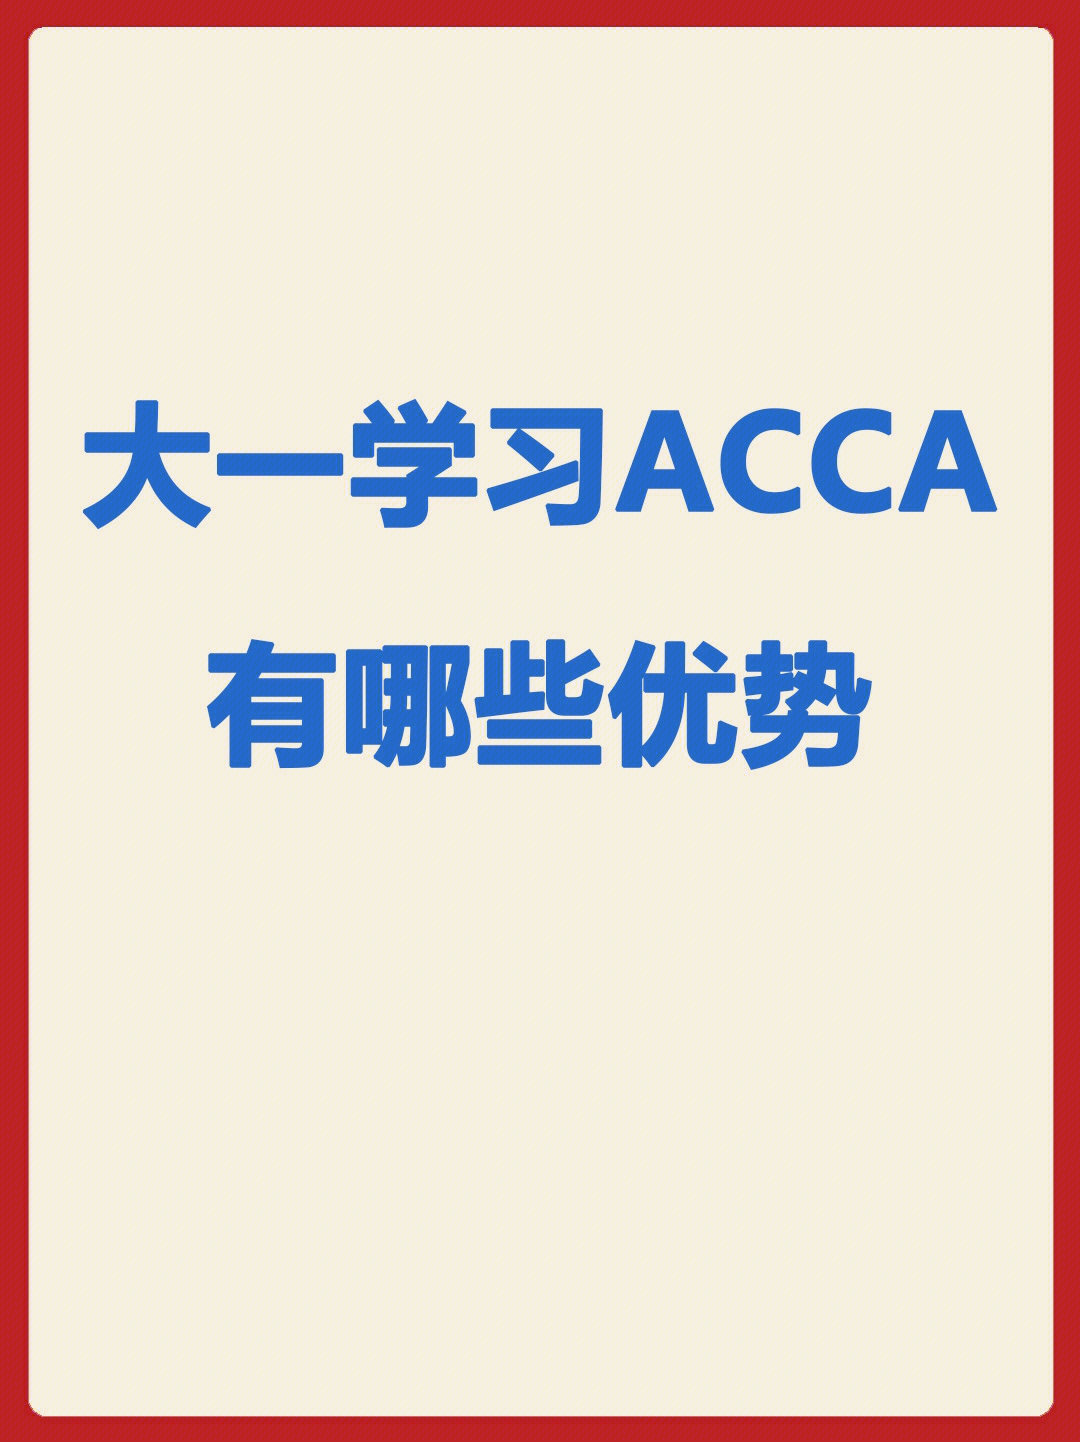 了解了acca证书,是否要报名参加考试?